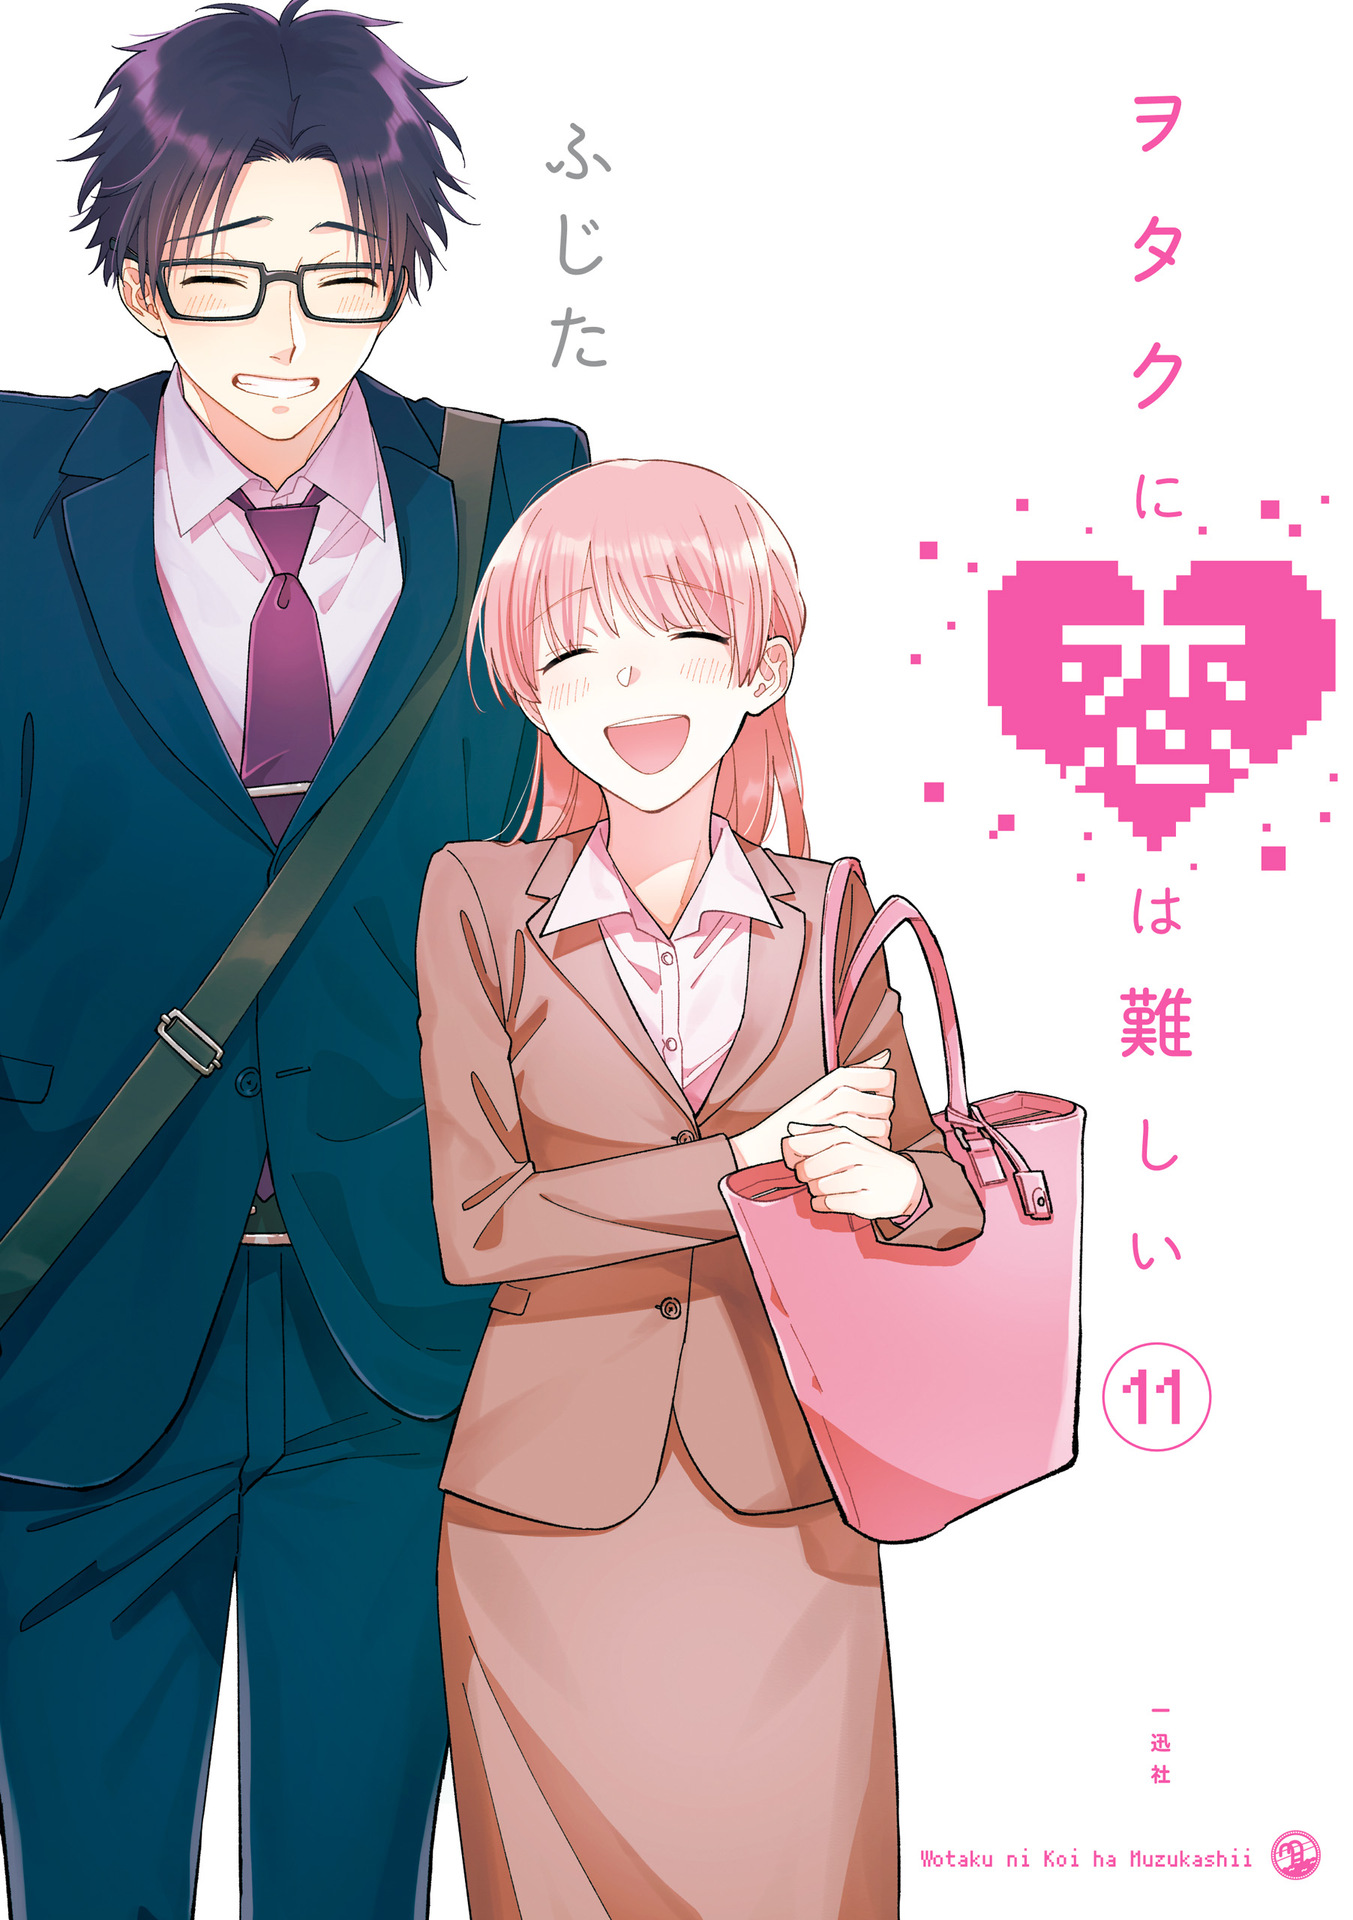 Wotaku ni Koi wa Muzukashii - Wotakoi: Love is Hard for Otaku - Animes  Online